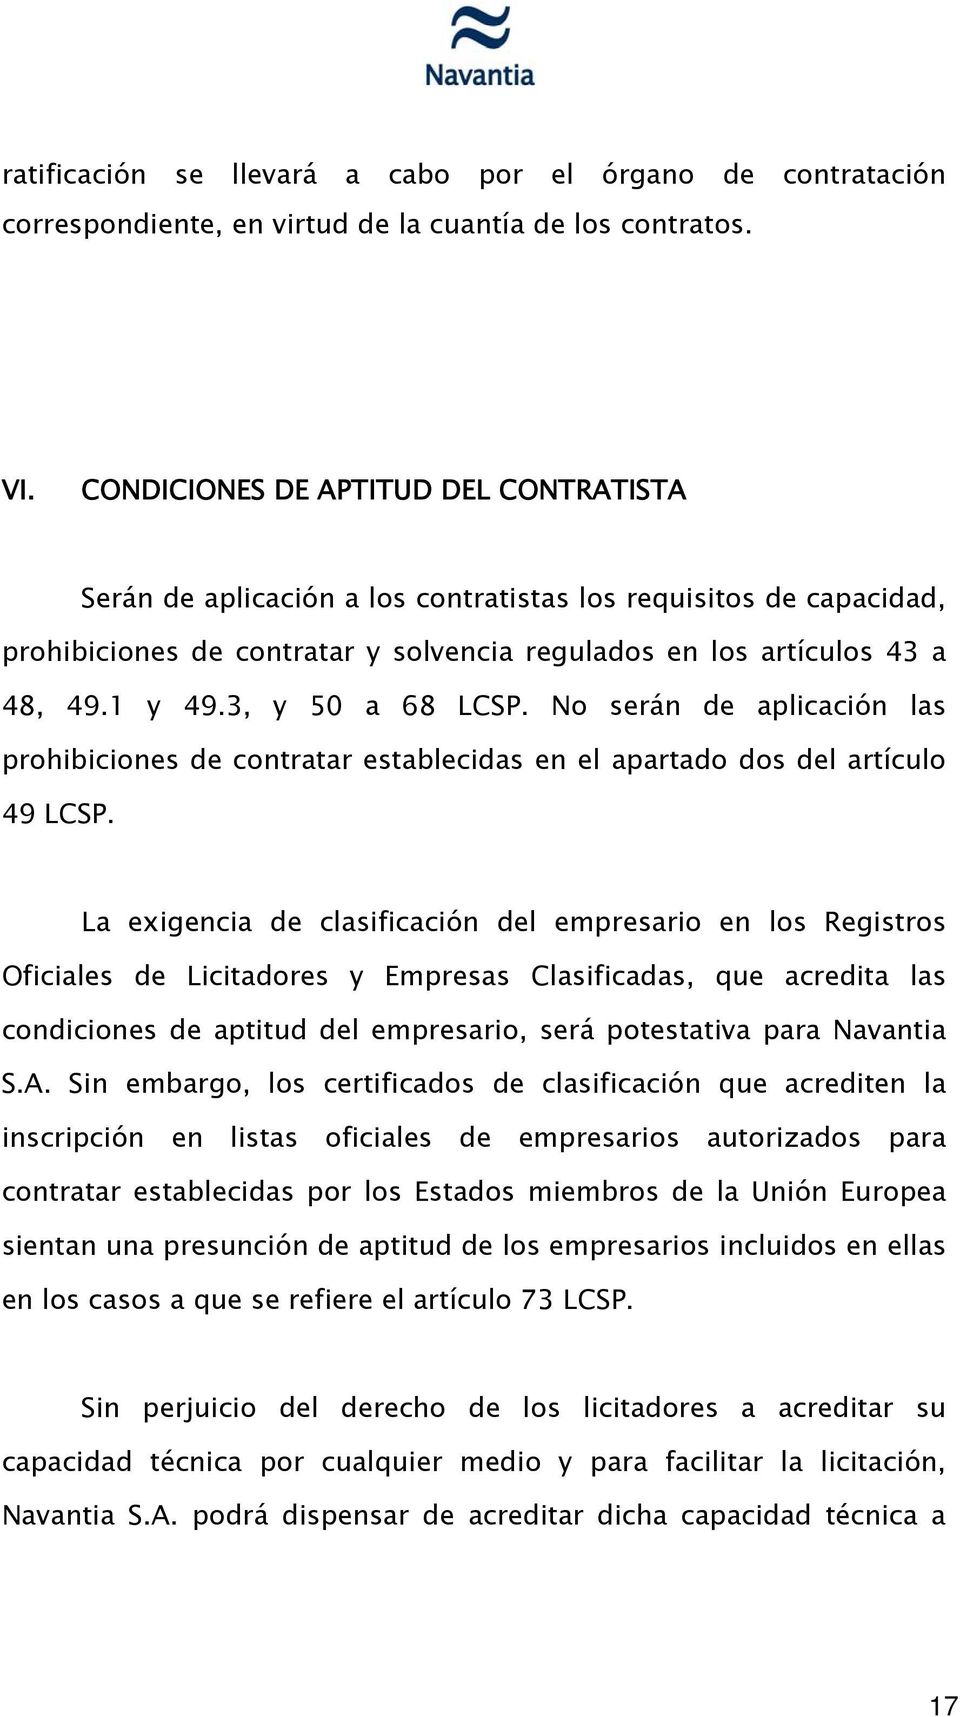 3, y 50 a 68 LCSP. No serán de aplicación las prohibiciones de contratar establecidas en el apartado dos del artículo 49 LCSP.